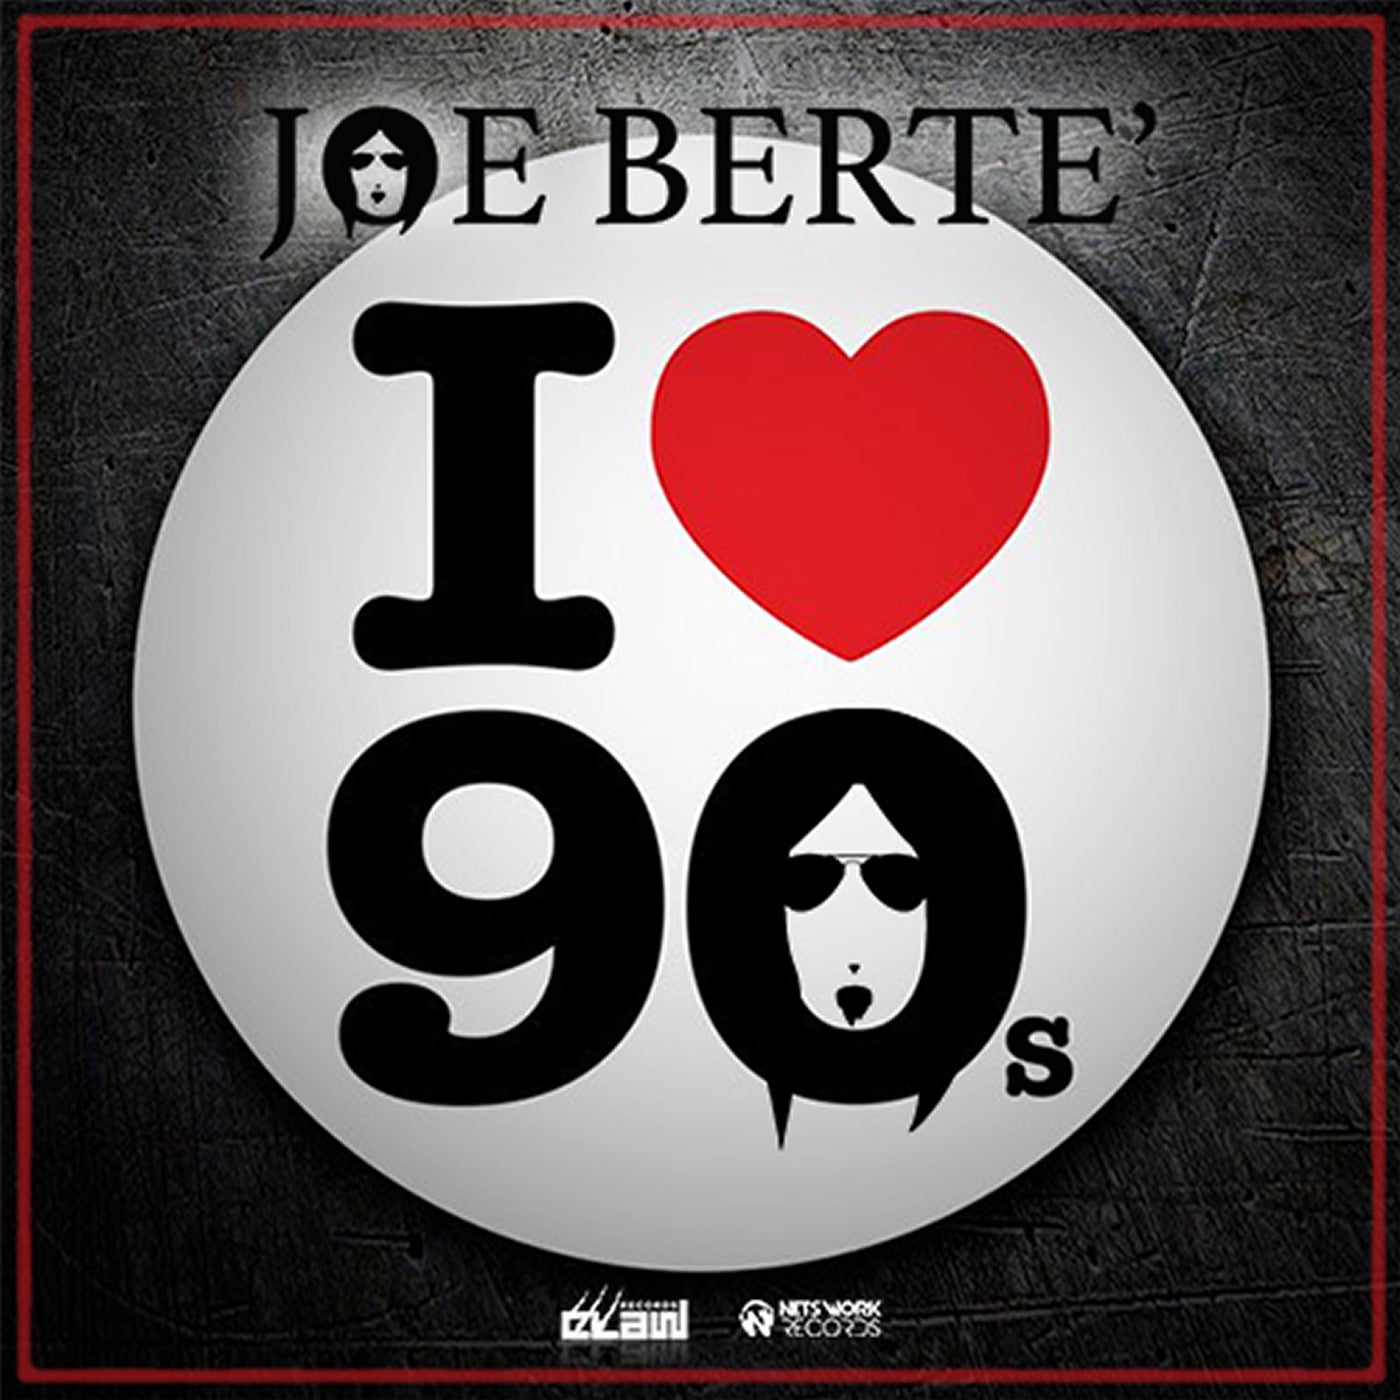 Лове 90. Наклейка i Love 80. I Love 90's. I Love 90's в кругу. I Love 90 Sticker.